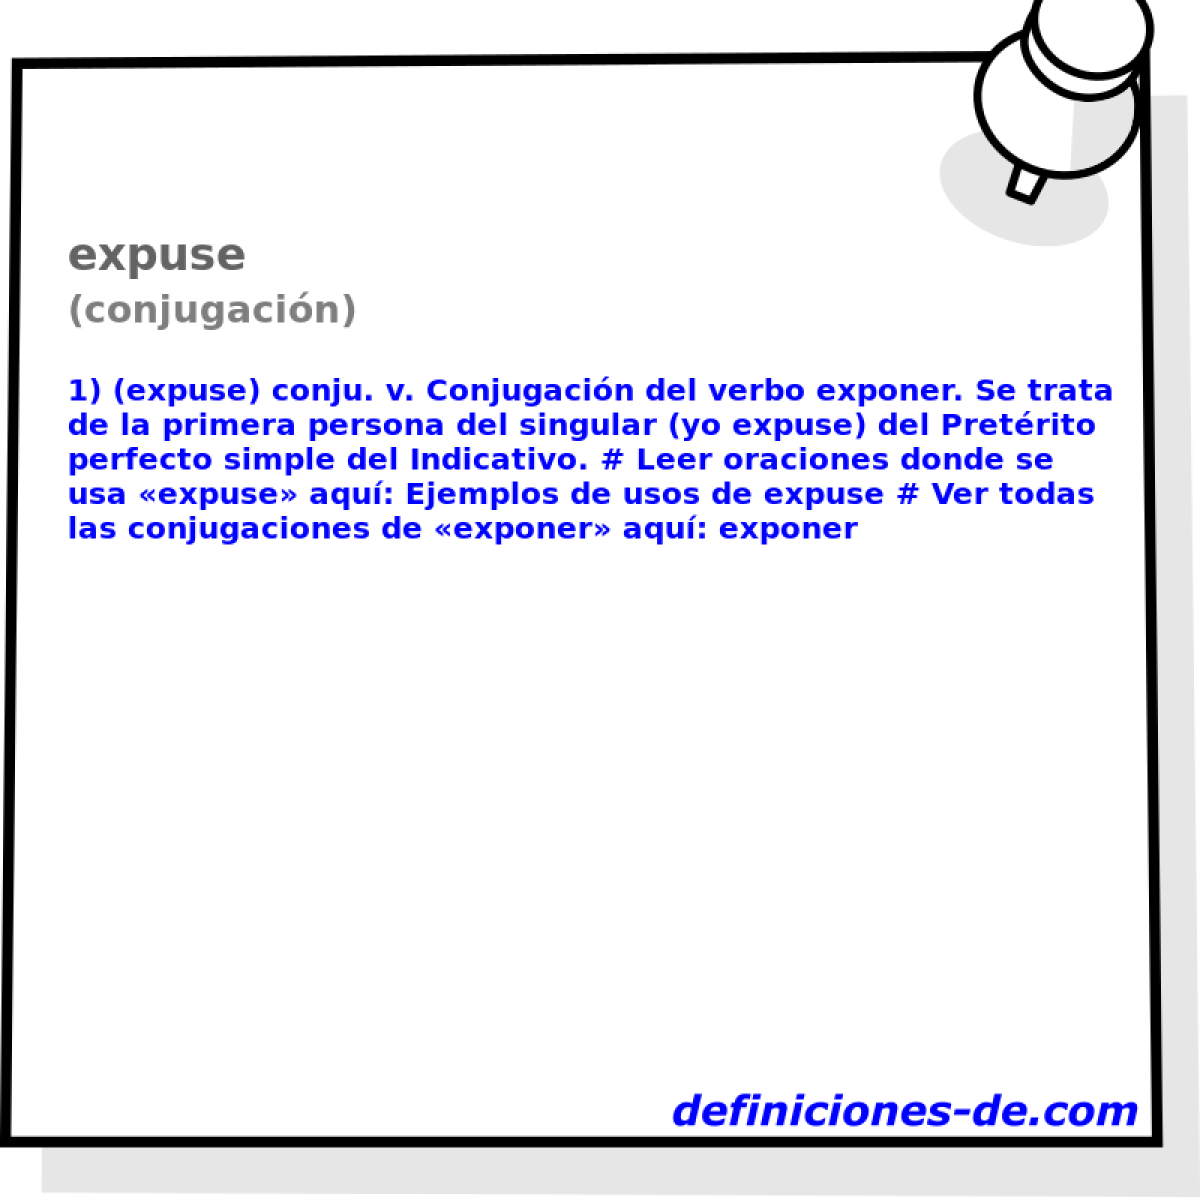 expuse (conjugacin)